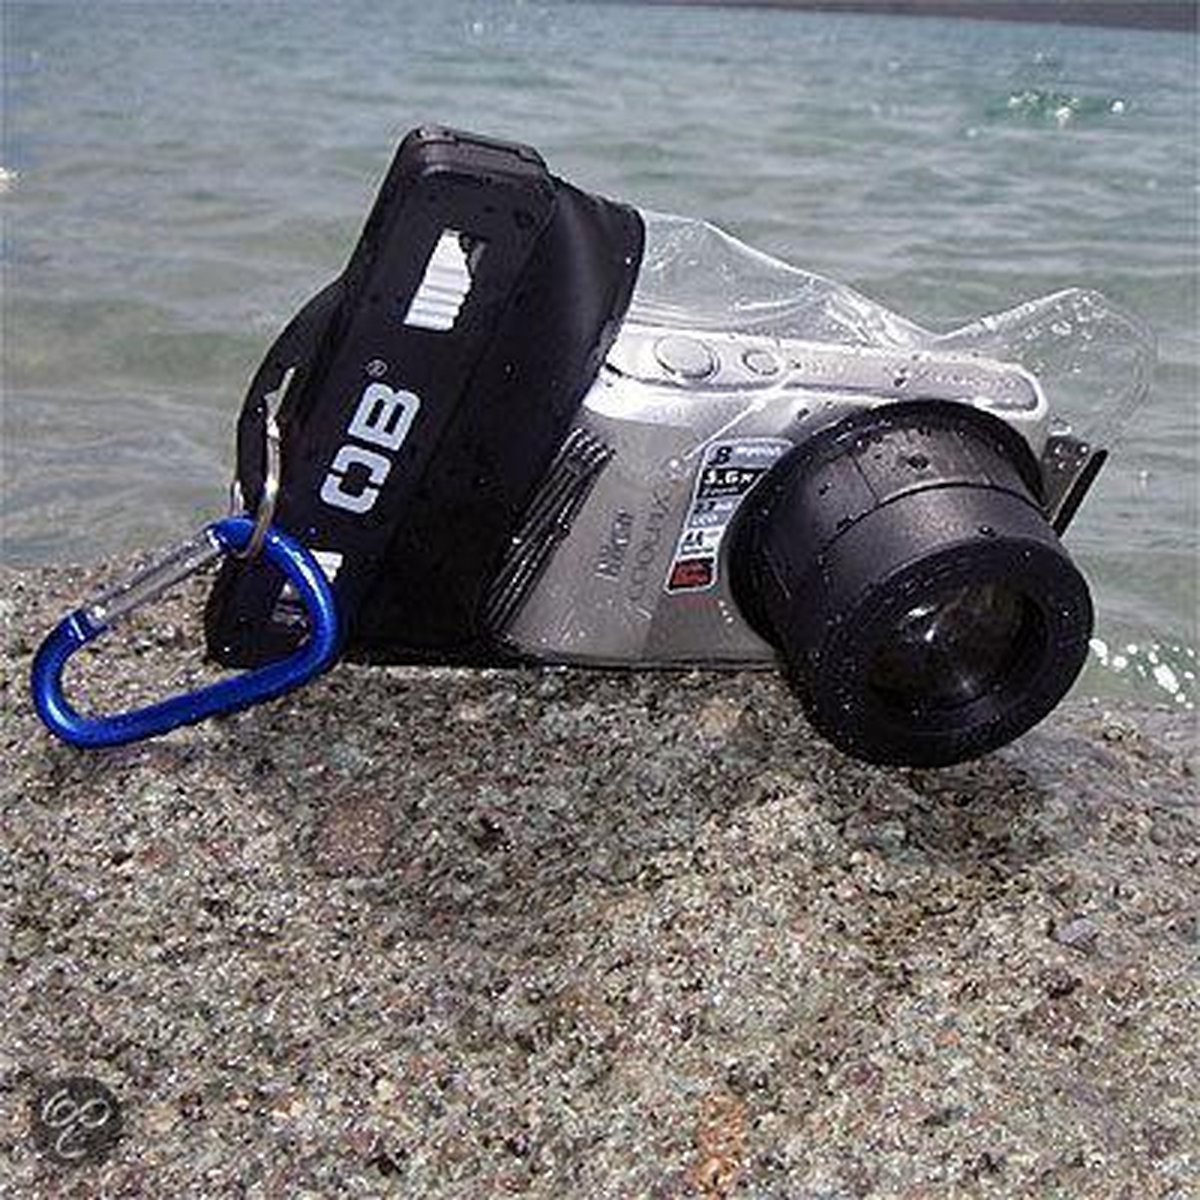 Waterdichte hoes voor compact-camera met | bol.com